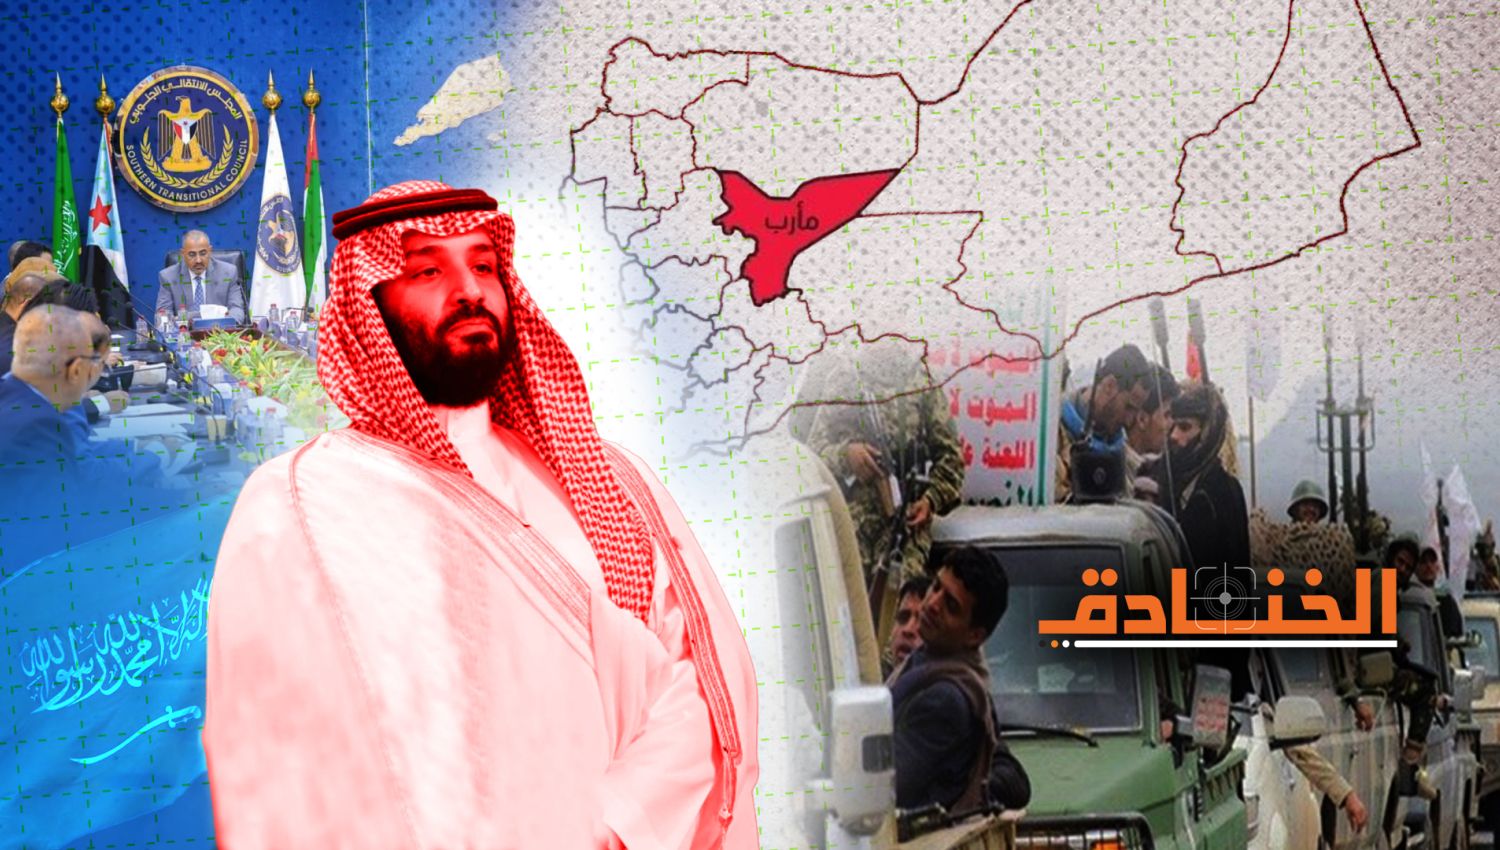 الرياض: إلى استراتيجية جديدة في الجنوب على حساب "حزب الإصلاح"!